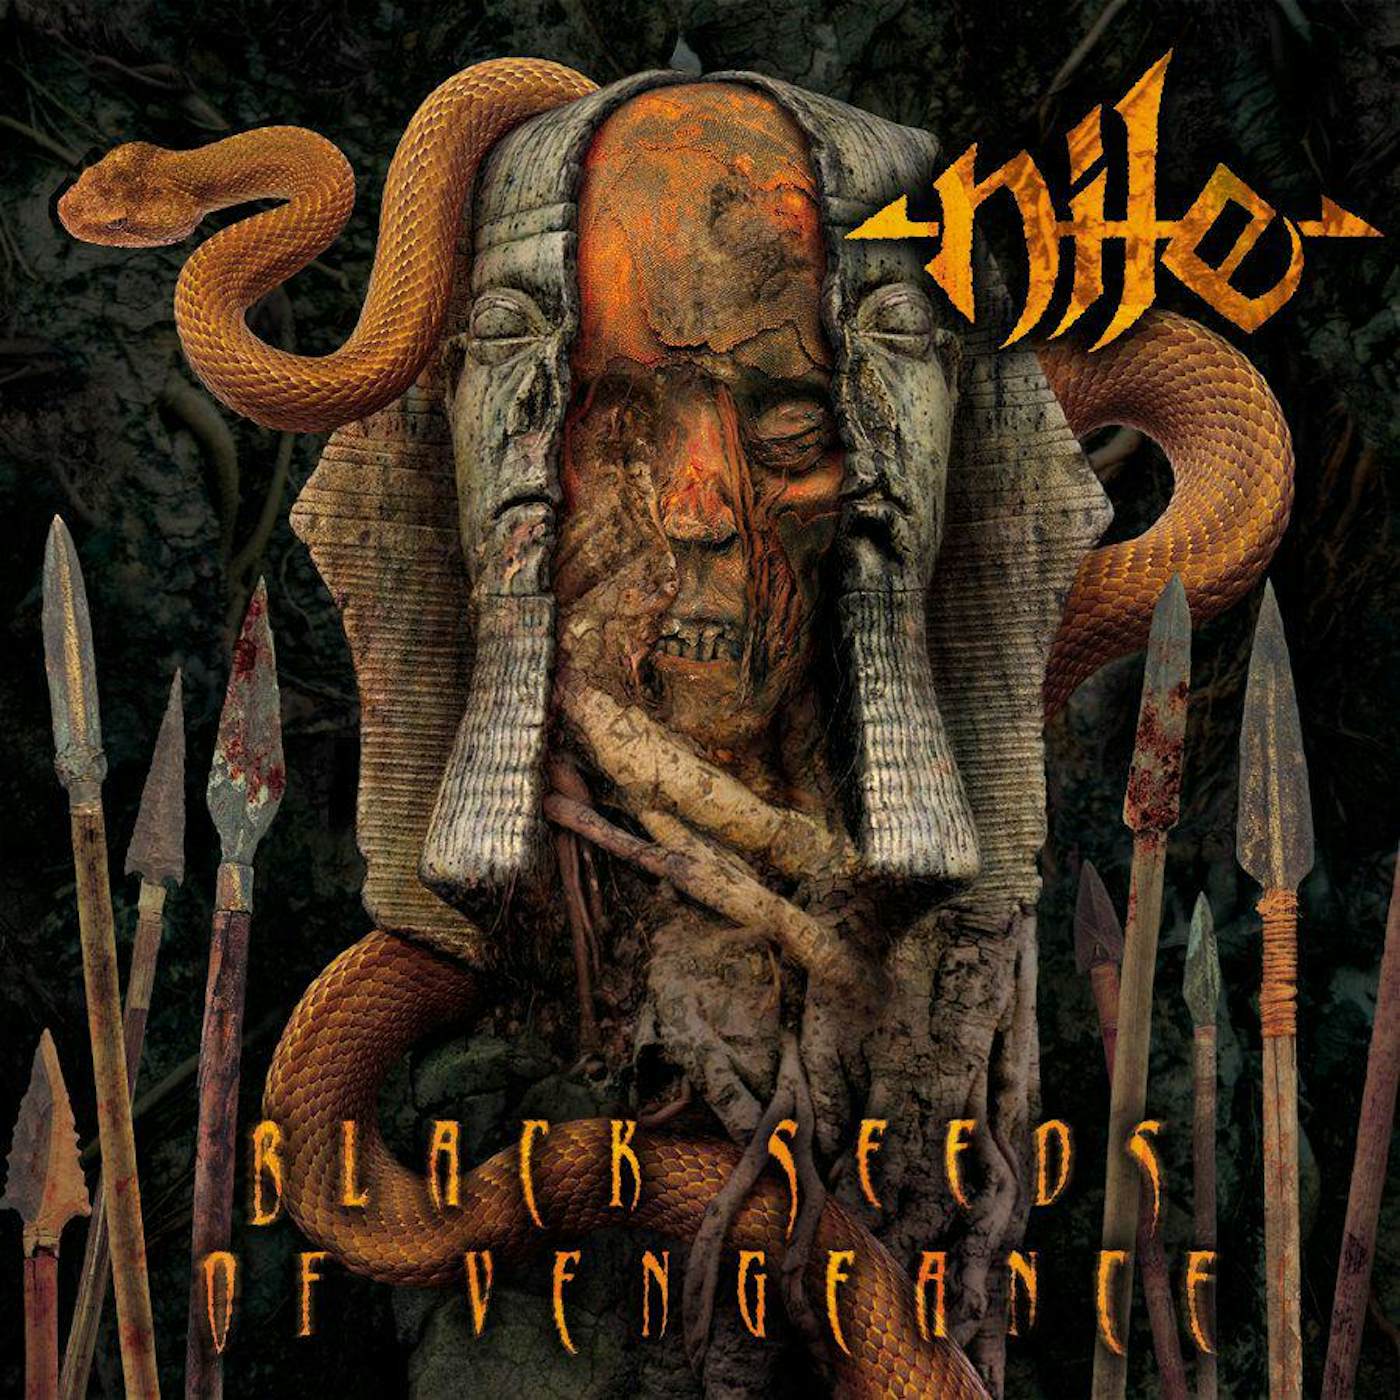 Nile Black Seeds of Vengence (Orange Crush W/ Heavy Black, Silver Splatter) Vinyl Record